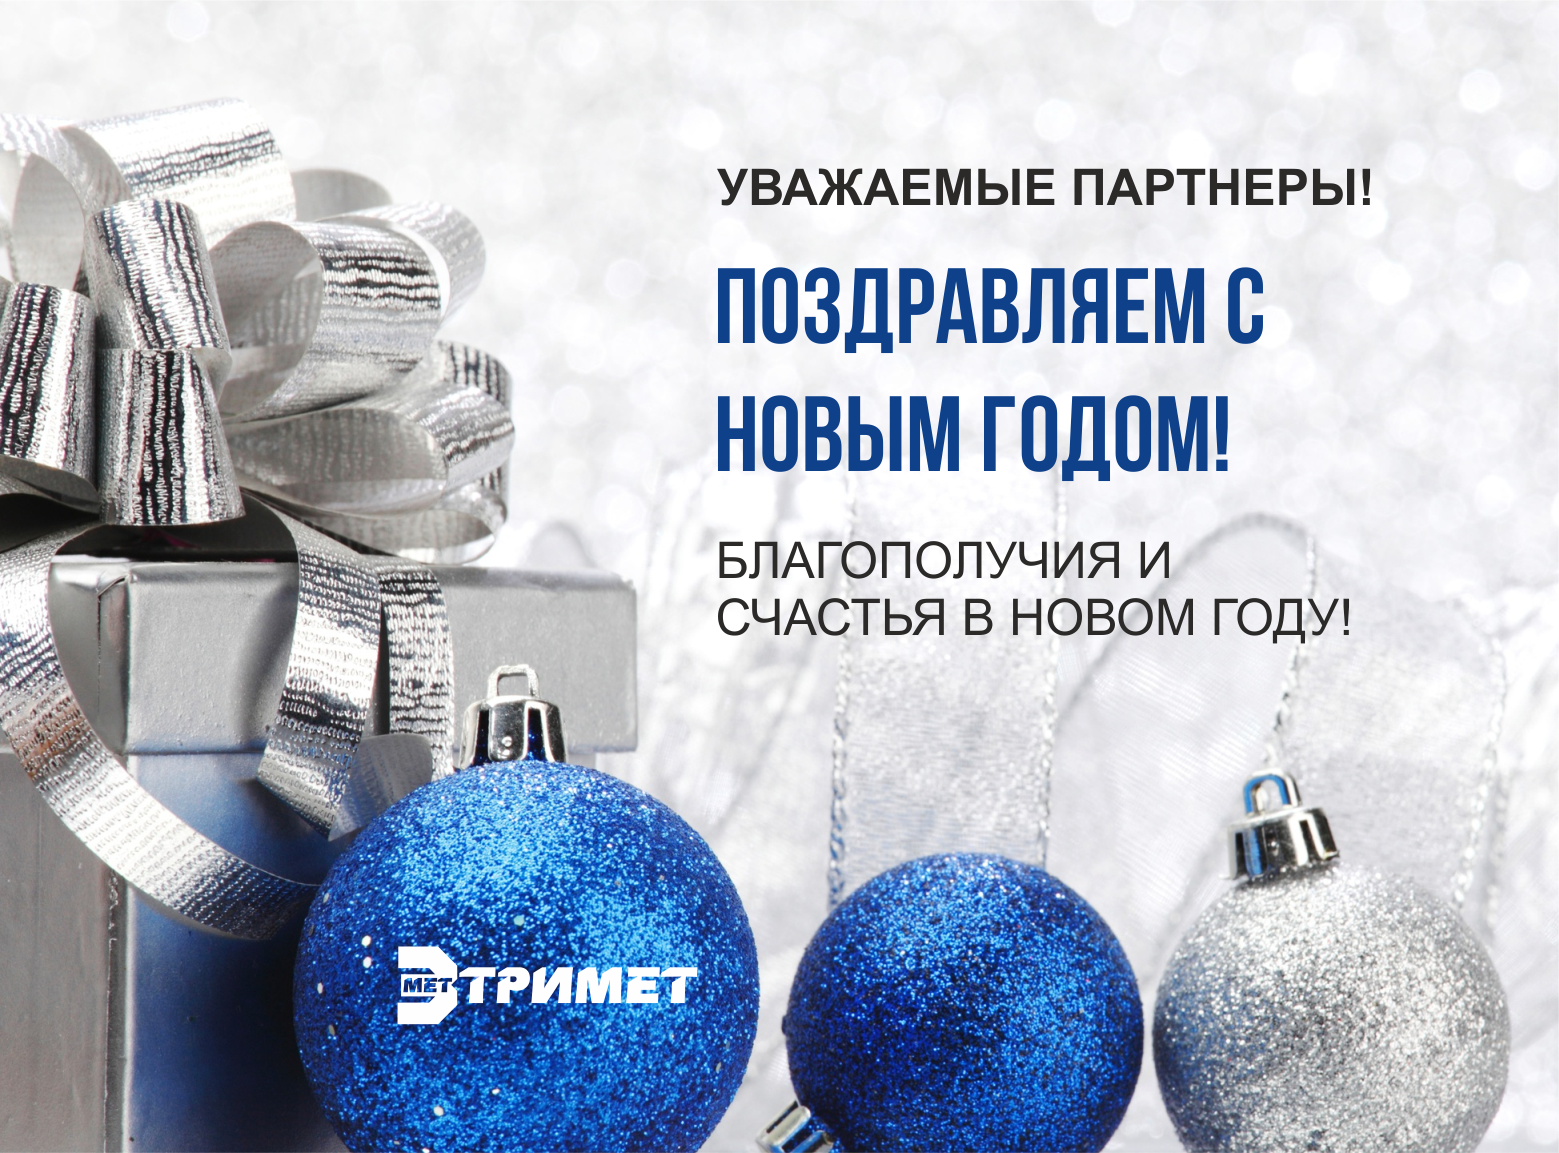 Уважаемые партнеры! Компания Тримет поздравляет Вас с наступающим Новым Годом!